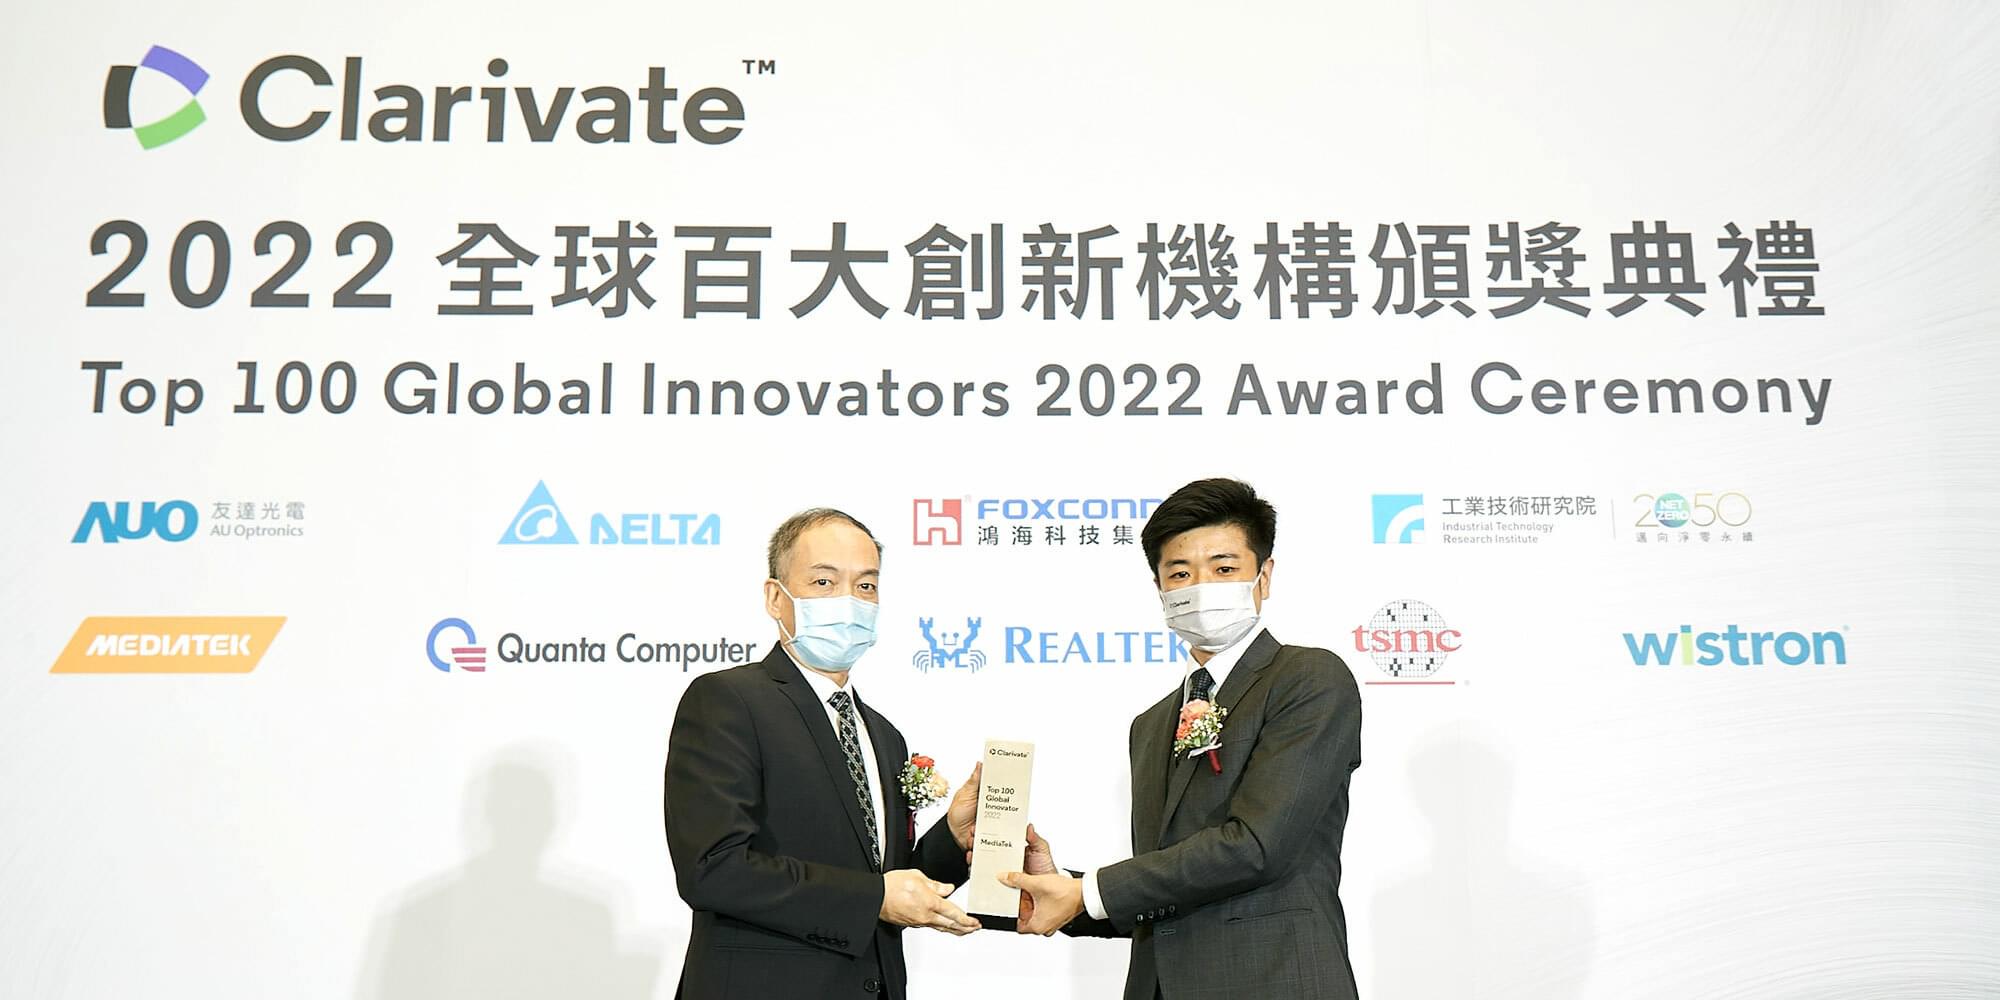 MediaTek recognized by Clarivate Top 100 Global Innovators 2022